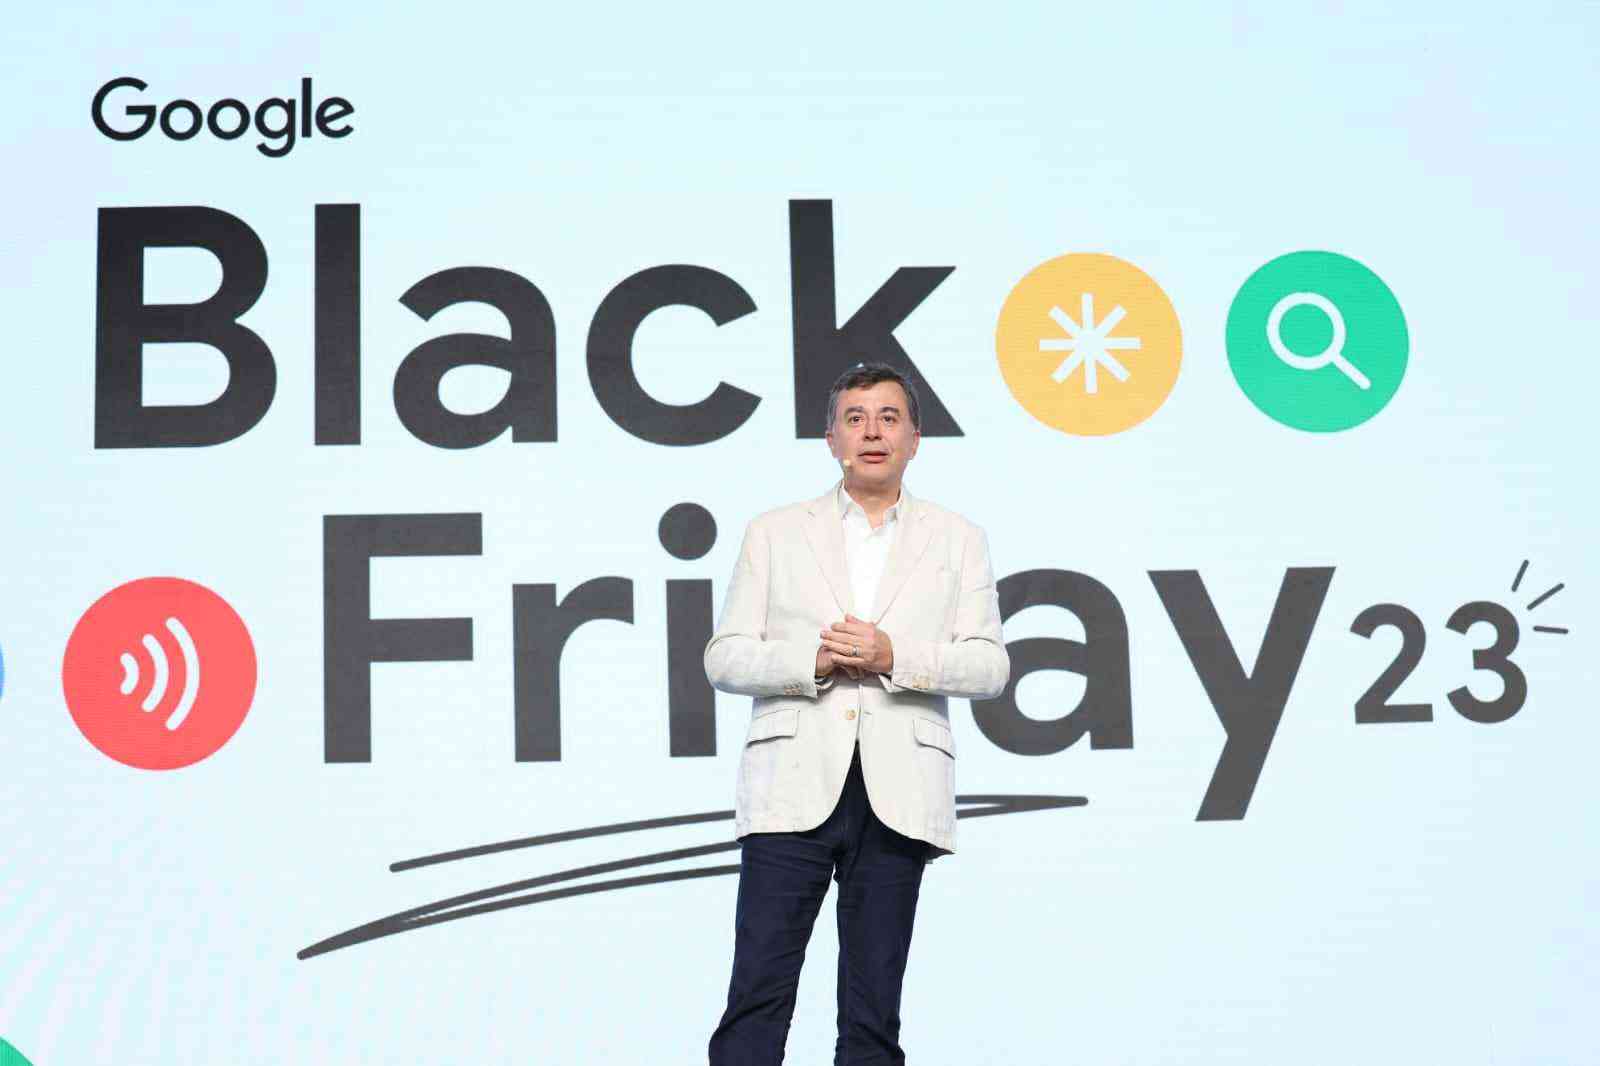  Black Friday: Google vai mostrar produtos com frete grátis e entrega rápida 